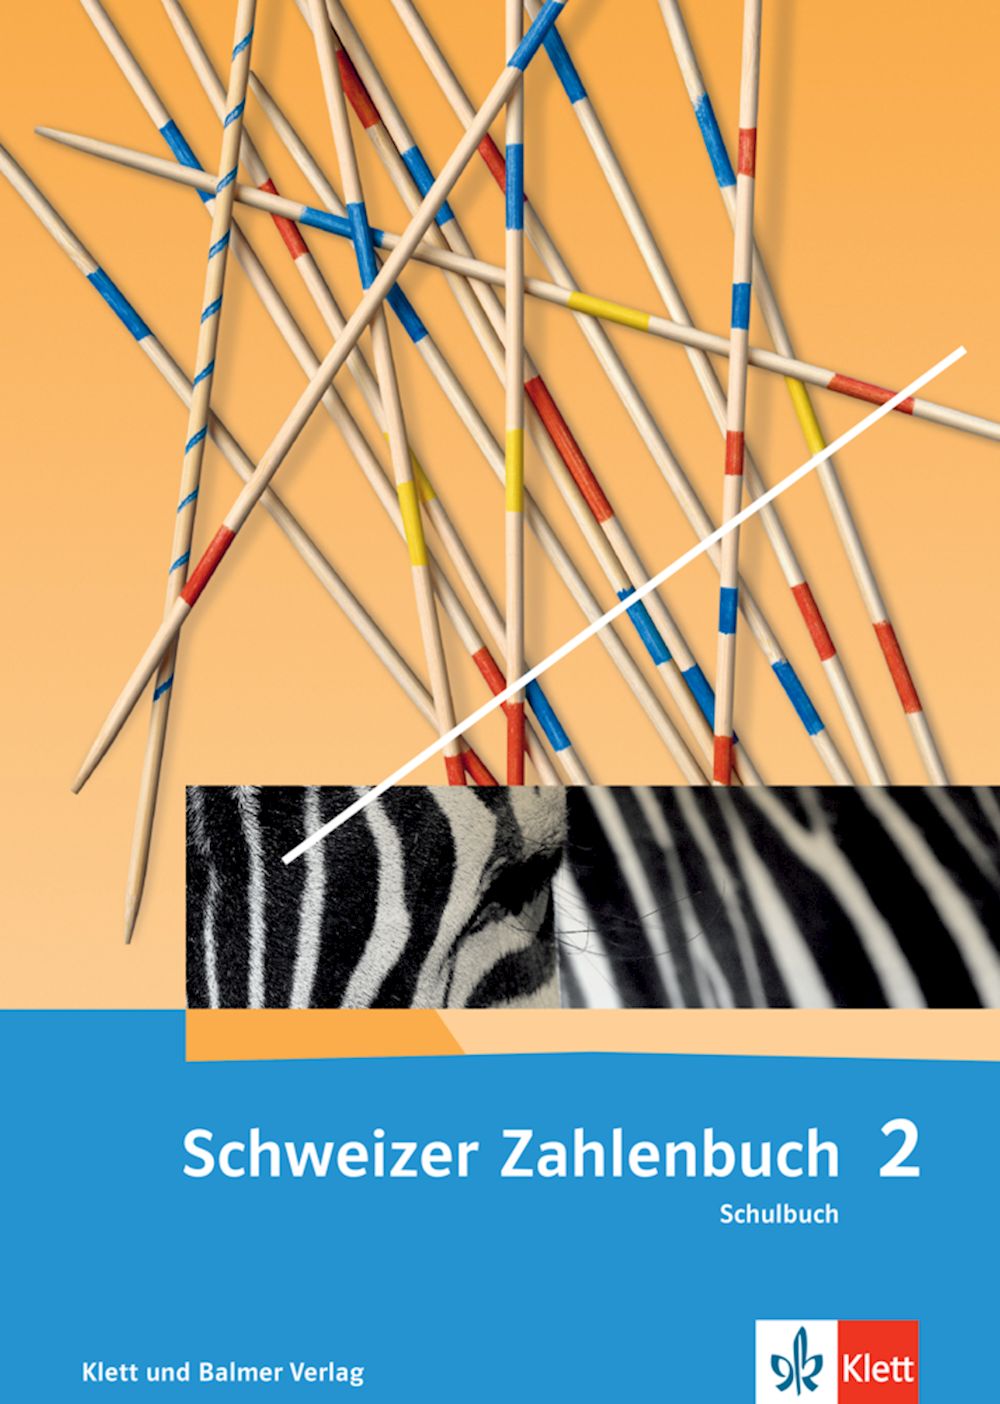 Schweizer Zahlenbuch 2, Schulbuch 